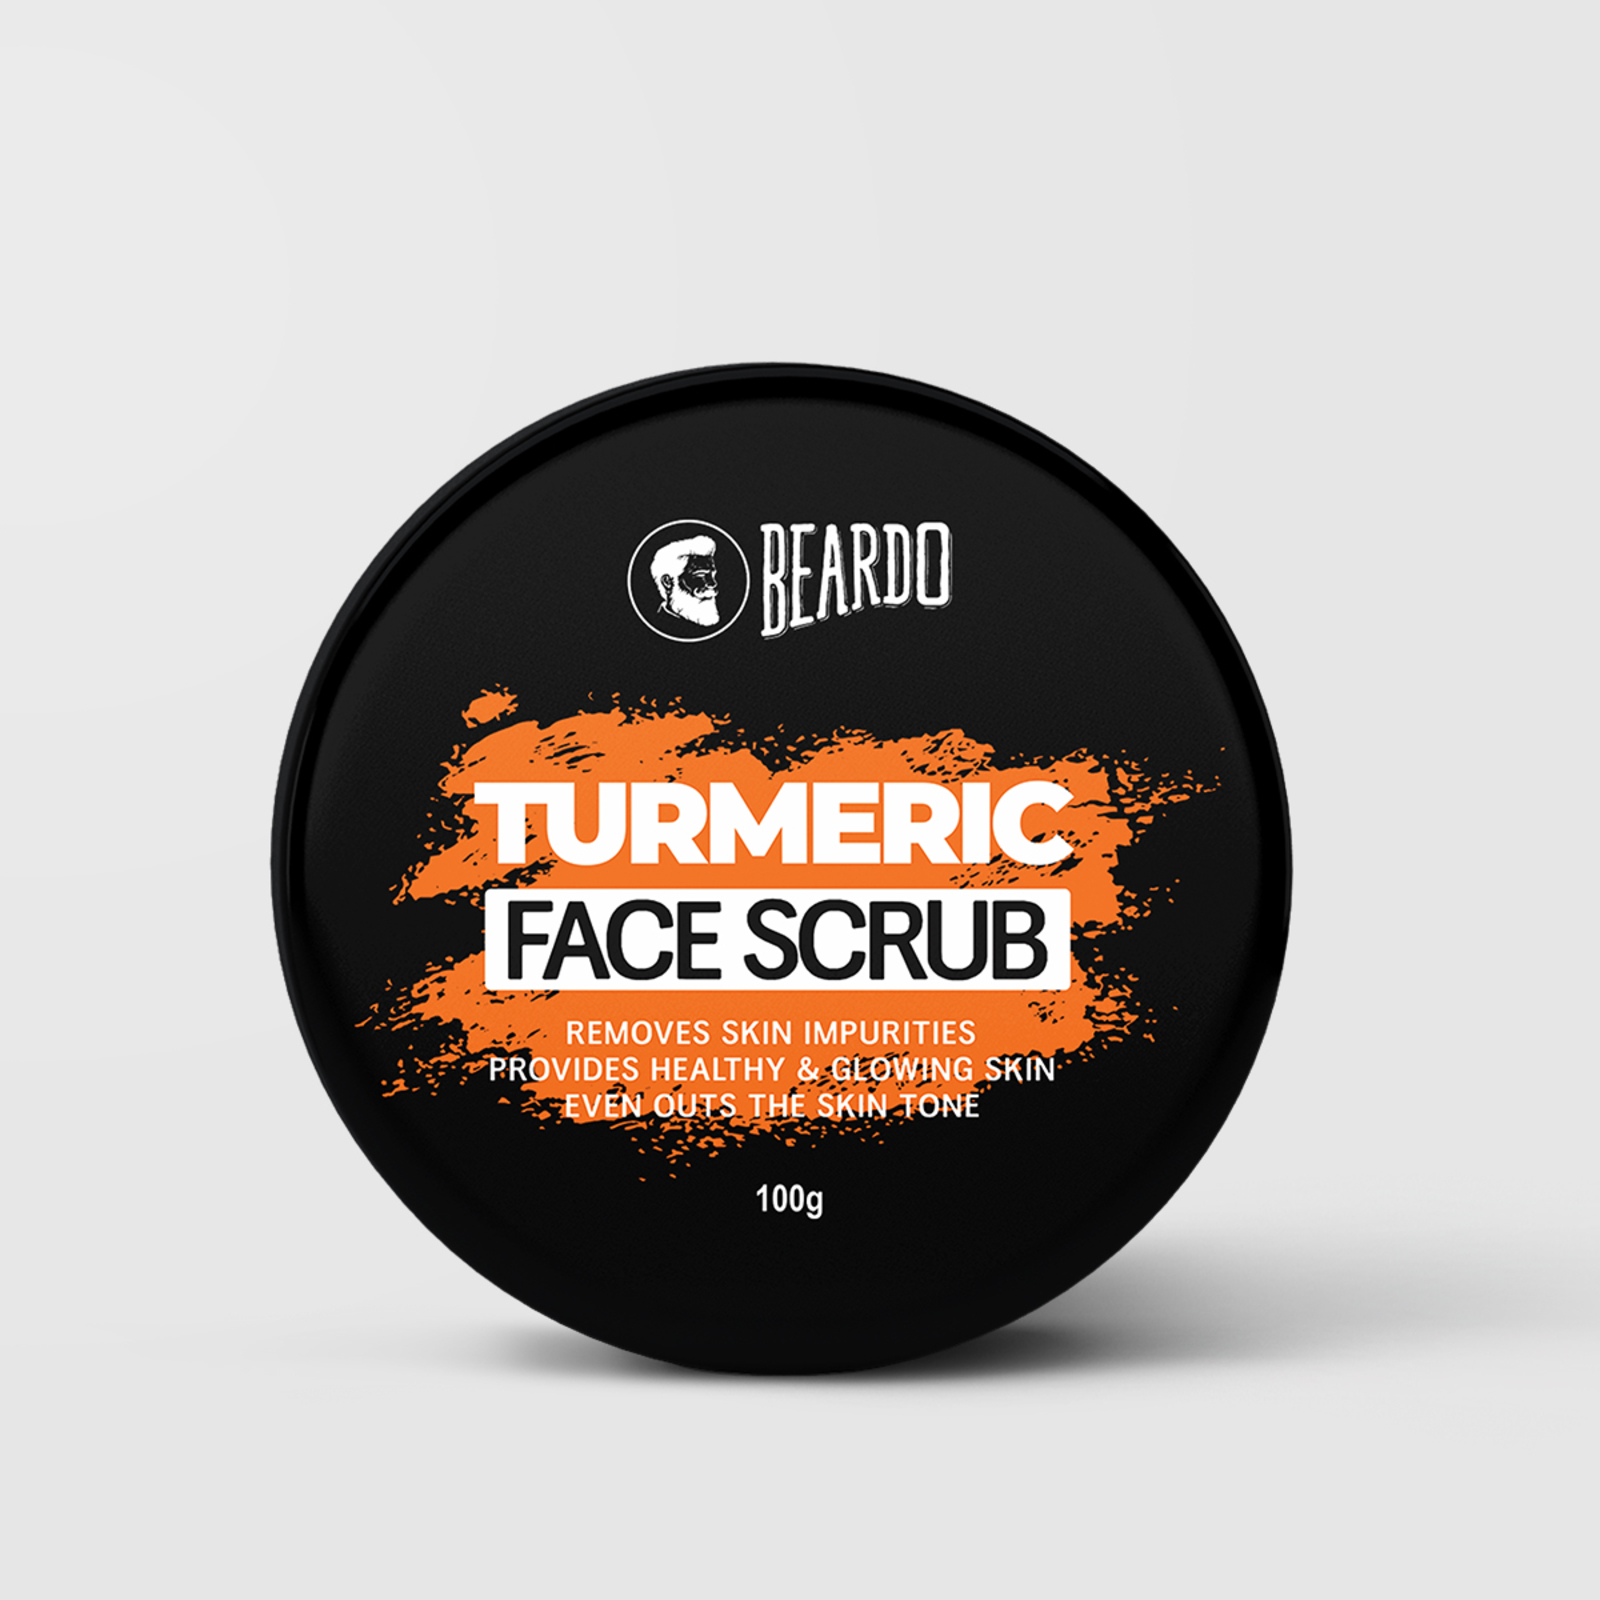 Beardo Turmeric Face Scrub for Men coupon code